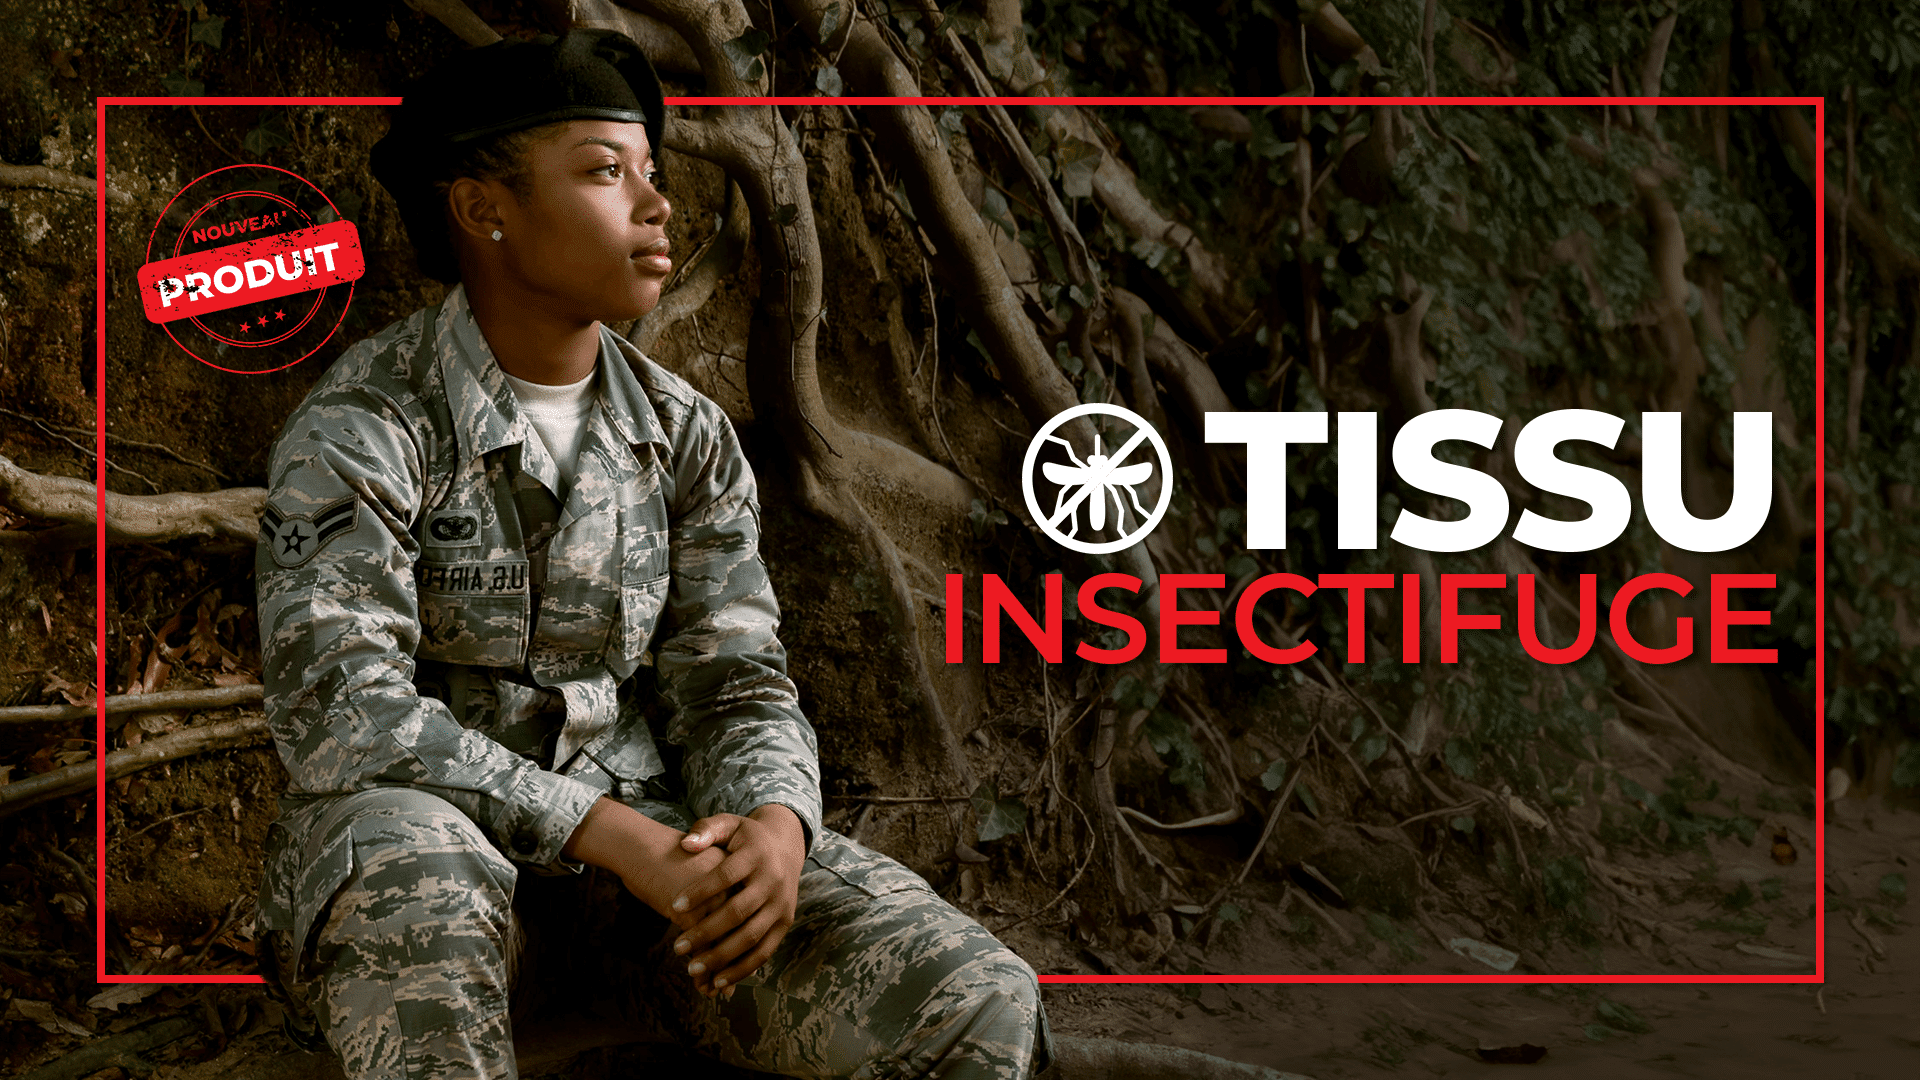 Raff Military Textile présente une innovation majeure : des uniformes résistants au feu et aux insectes pour une protection maximale